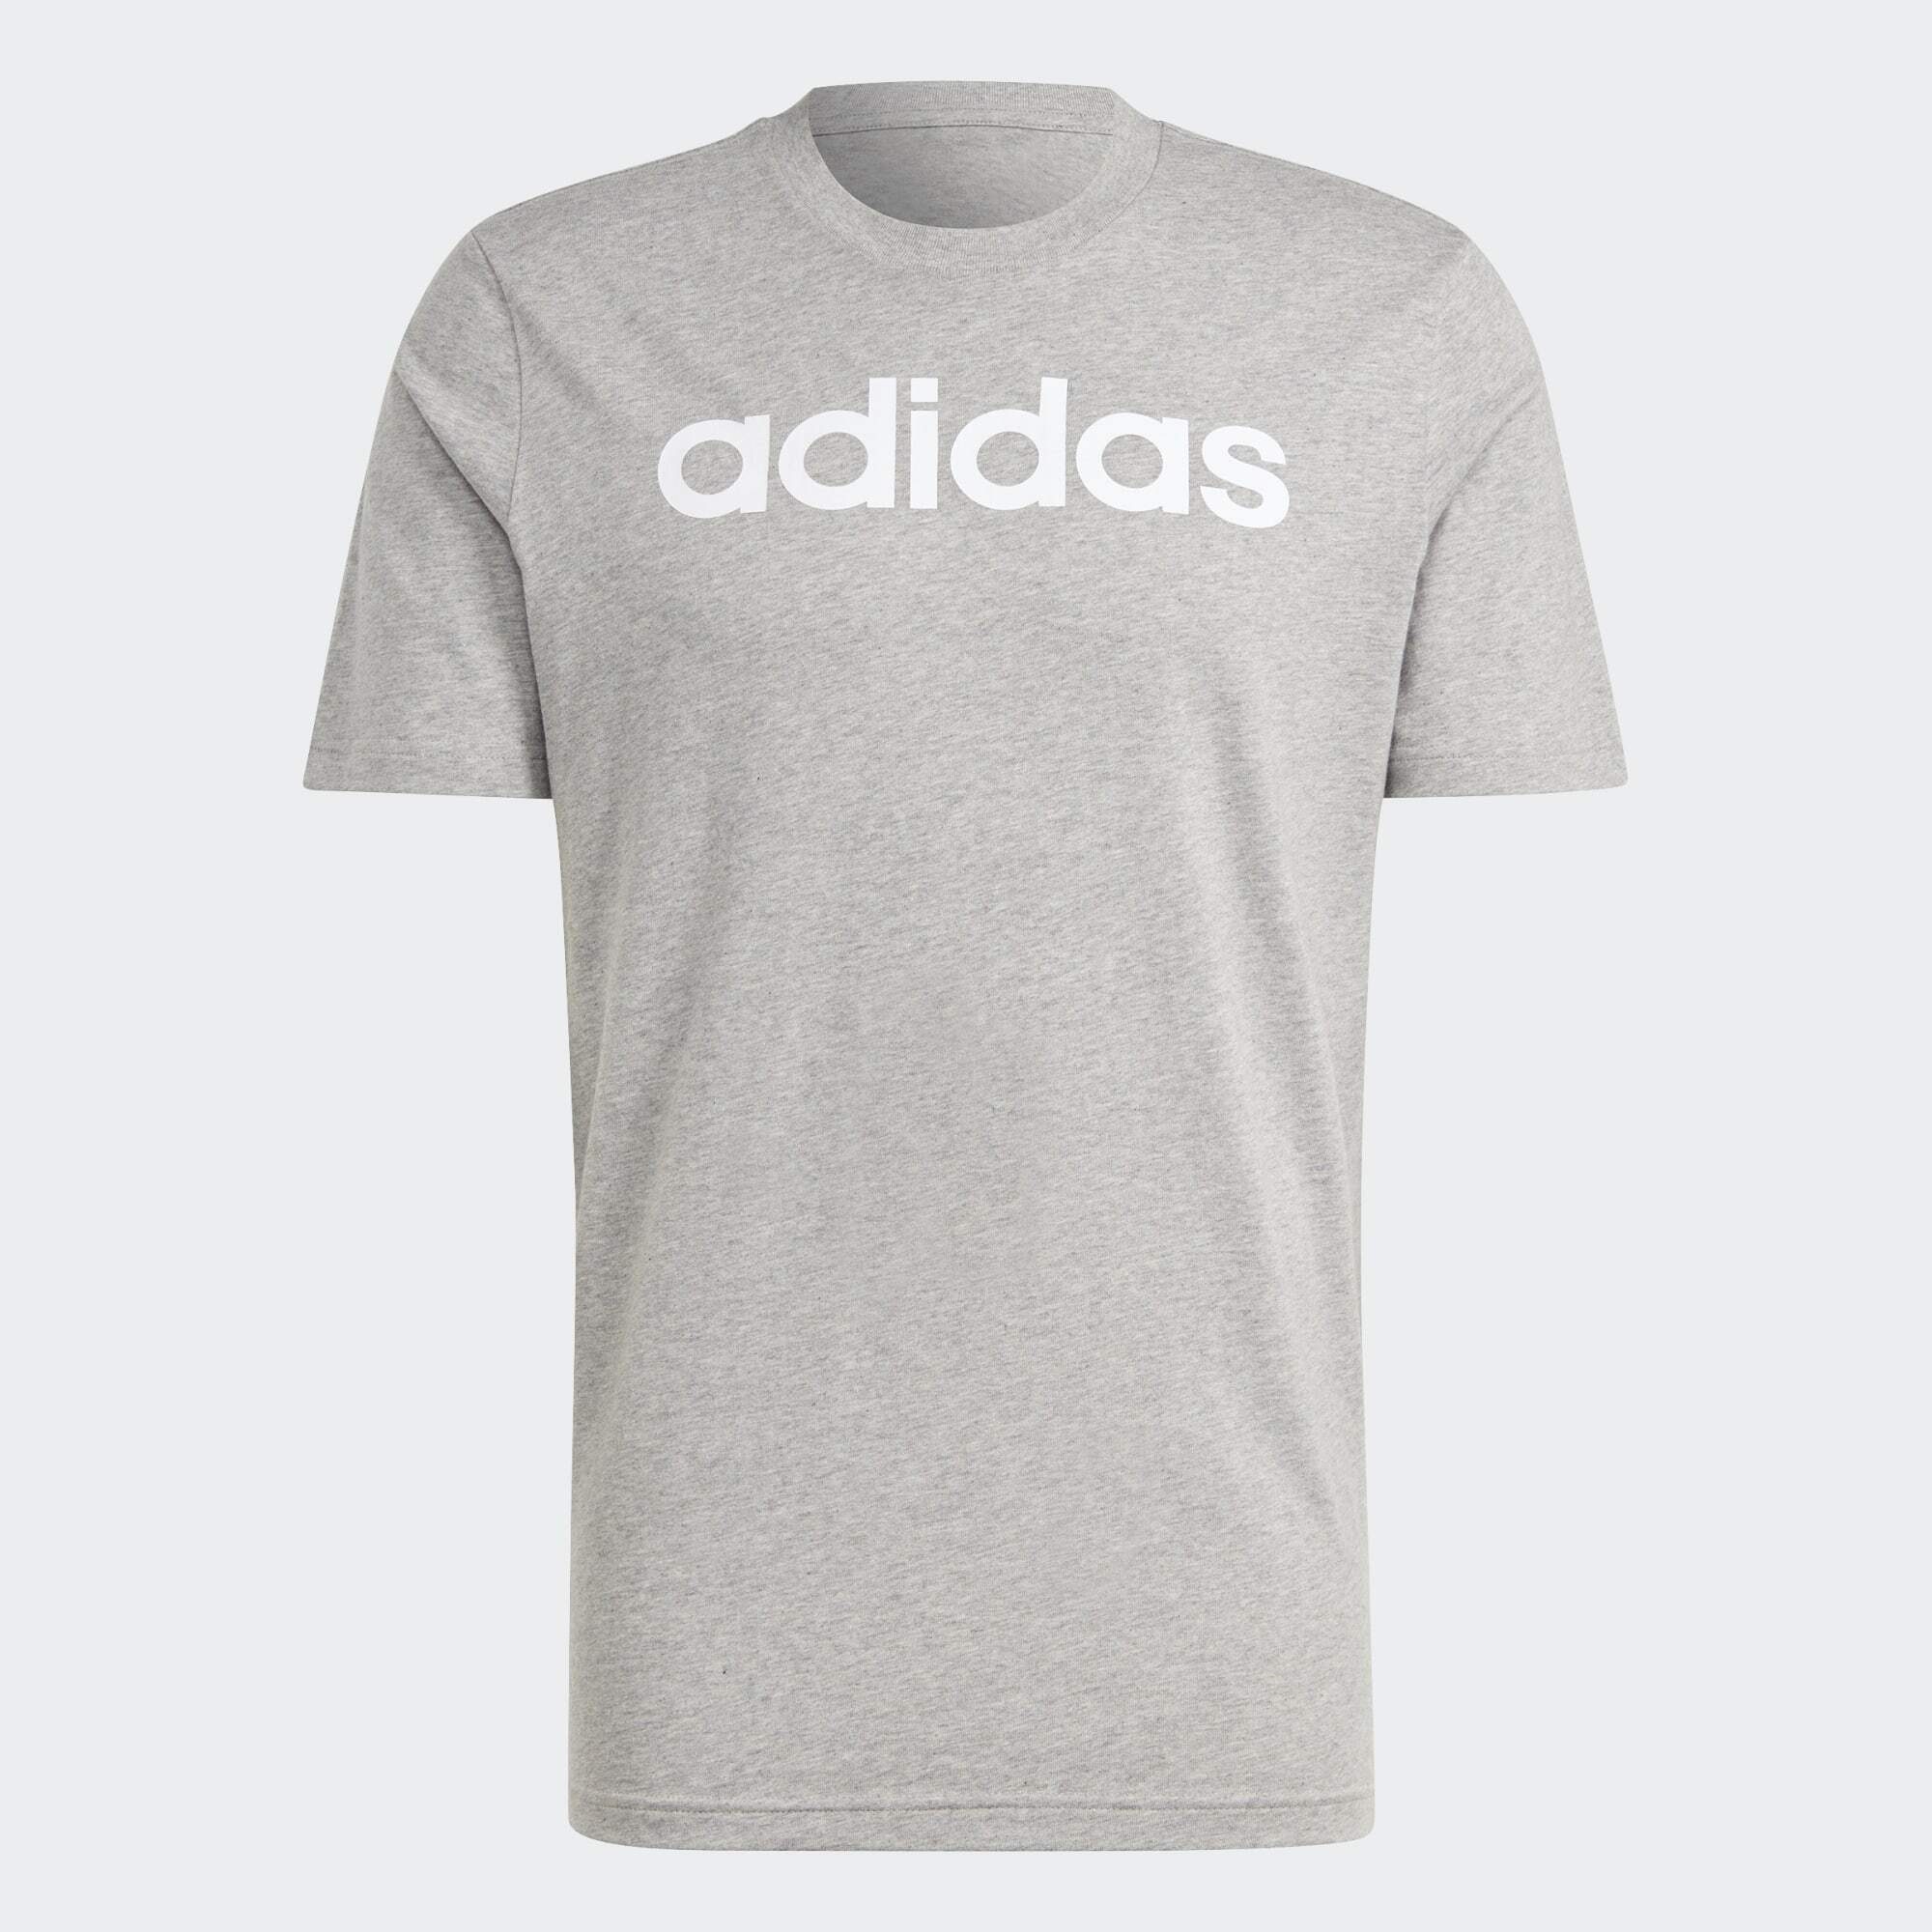 adidas Sportswear T-Shirt Heather Grey Medium